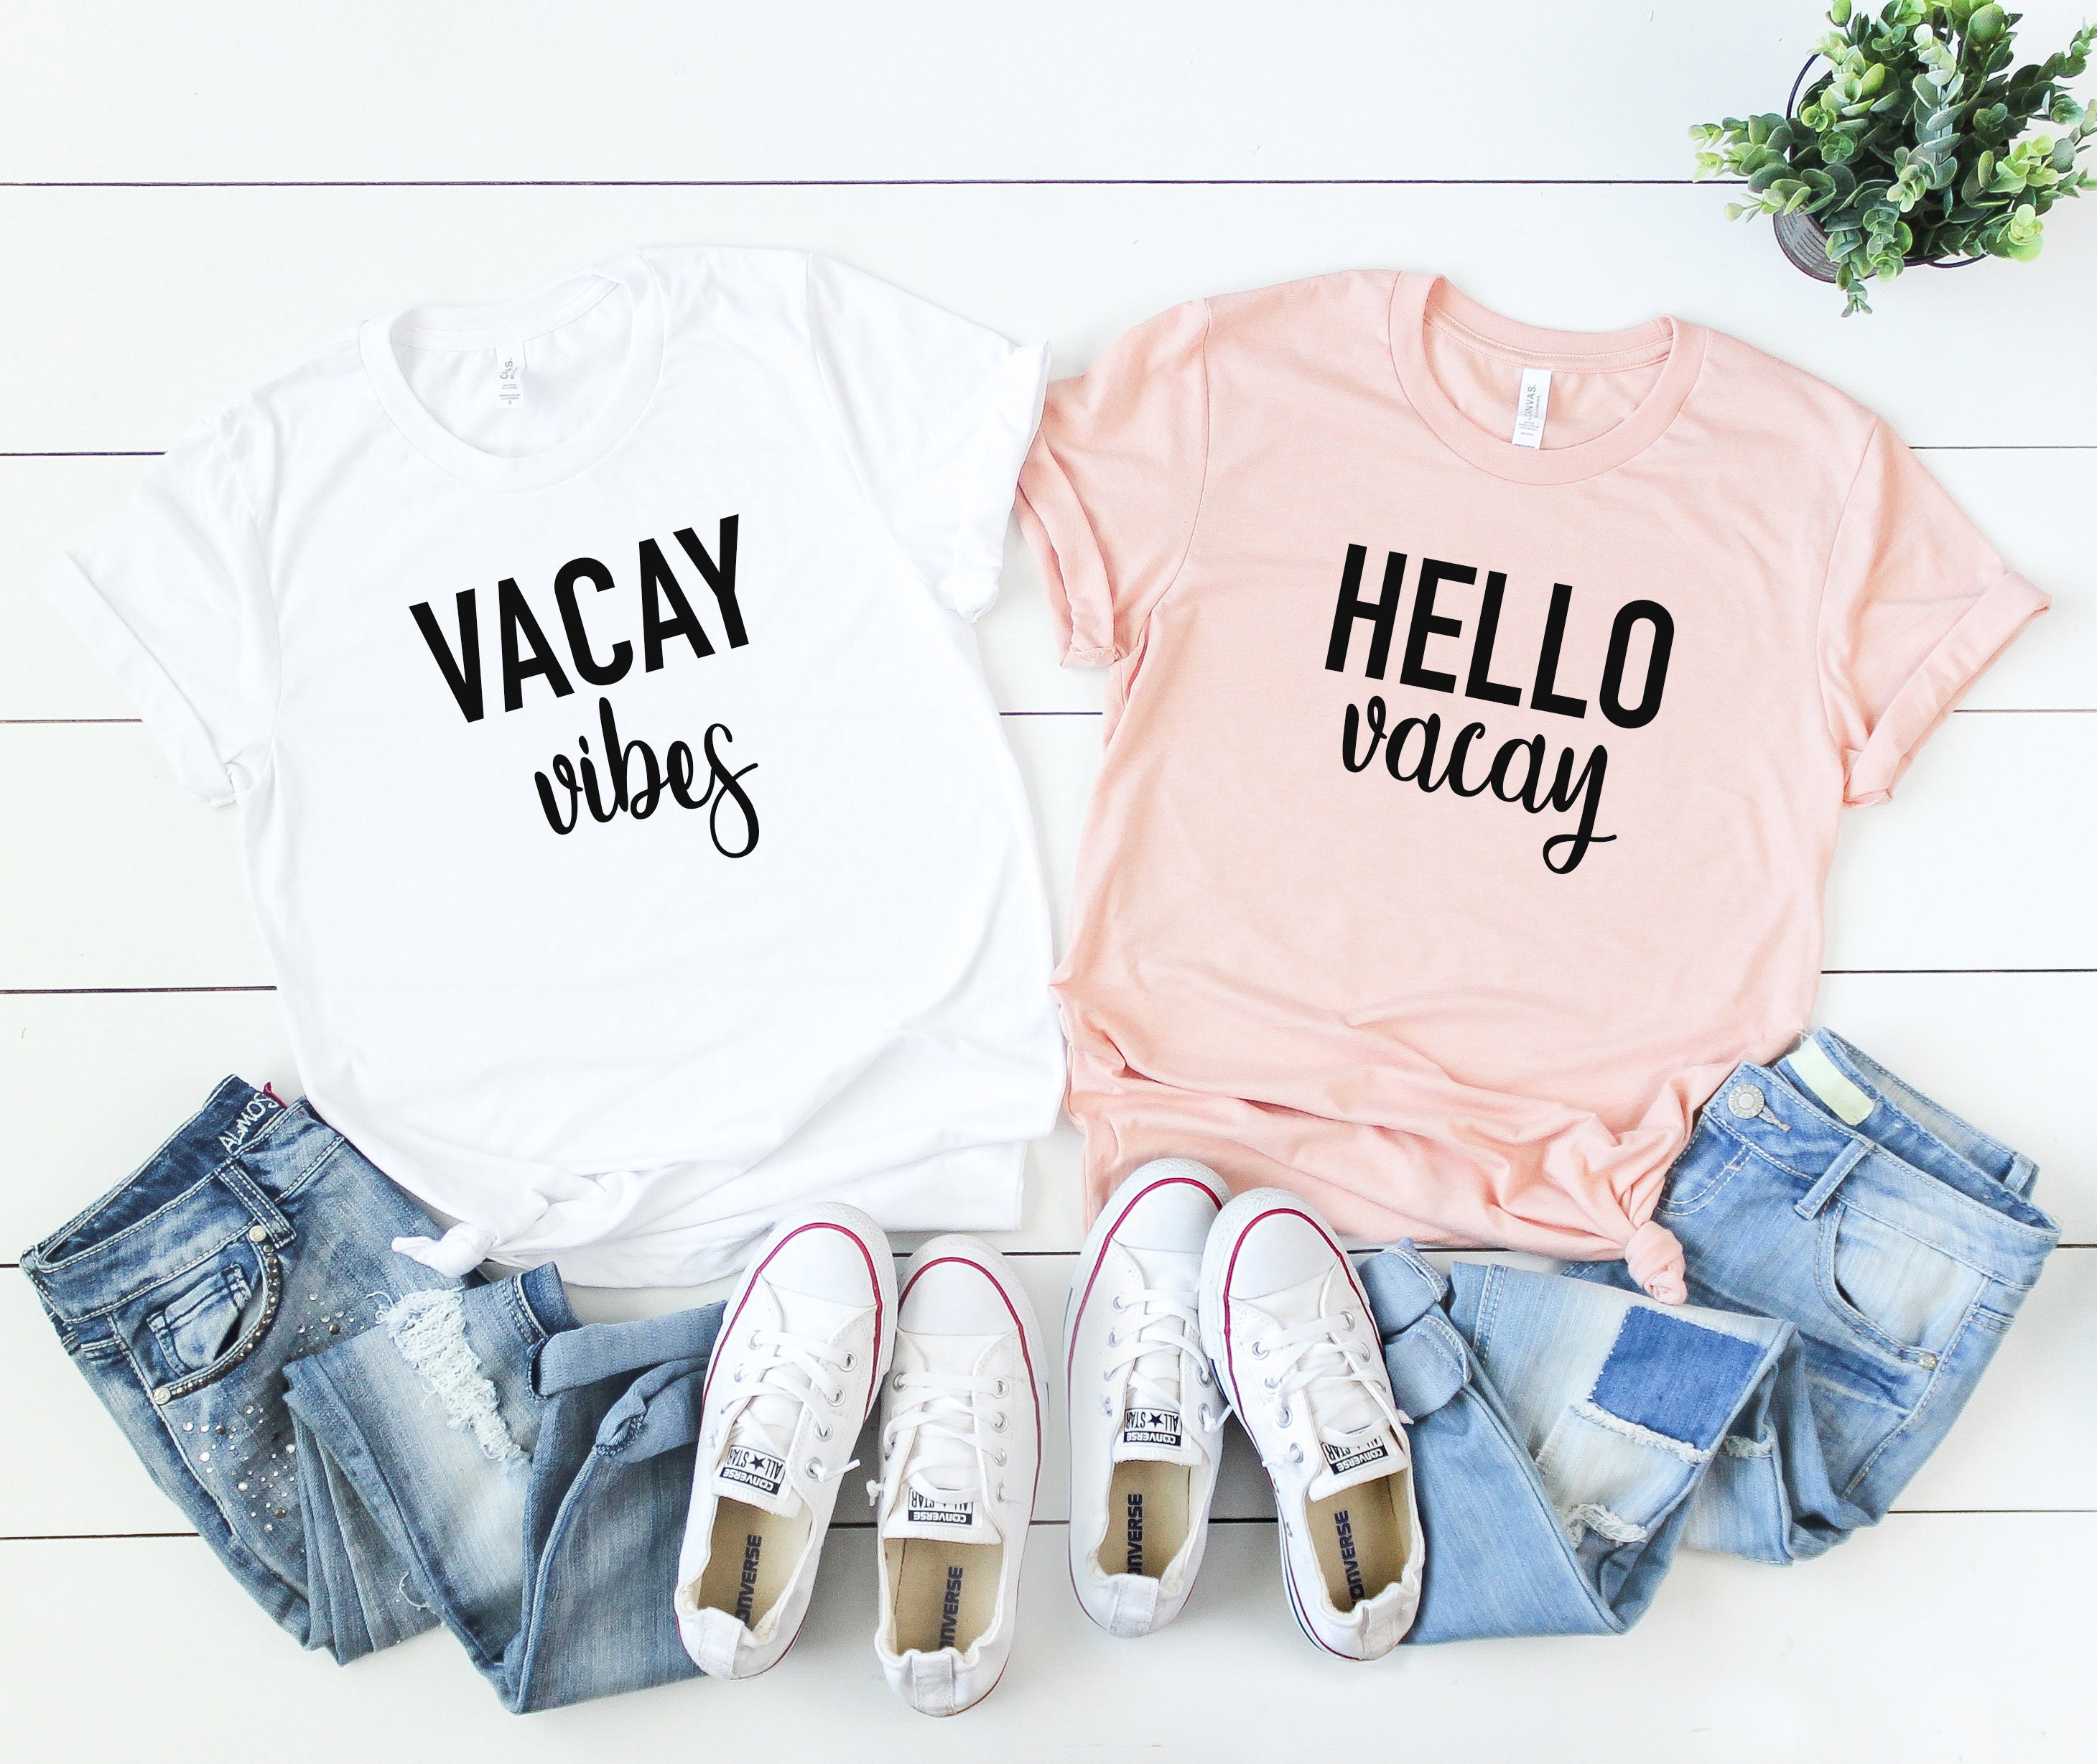 Hello Vacay -Vacay Vibes - Women's Vacation Shirt -Cute Tees- Cute T-Shirt- Shirts- Vibes-Girs Trip Shirts